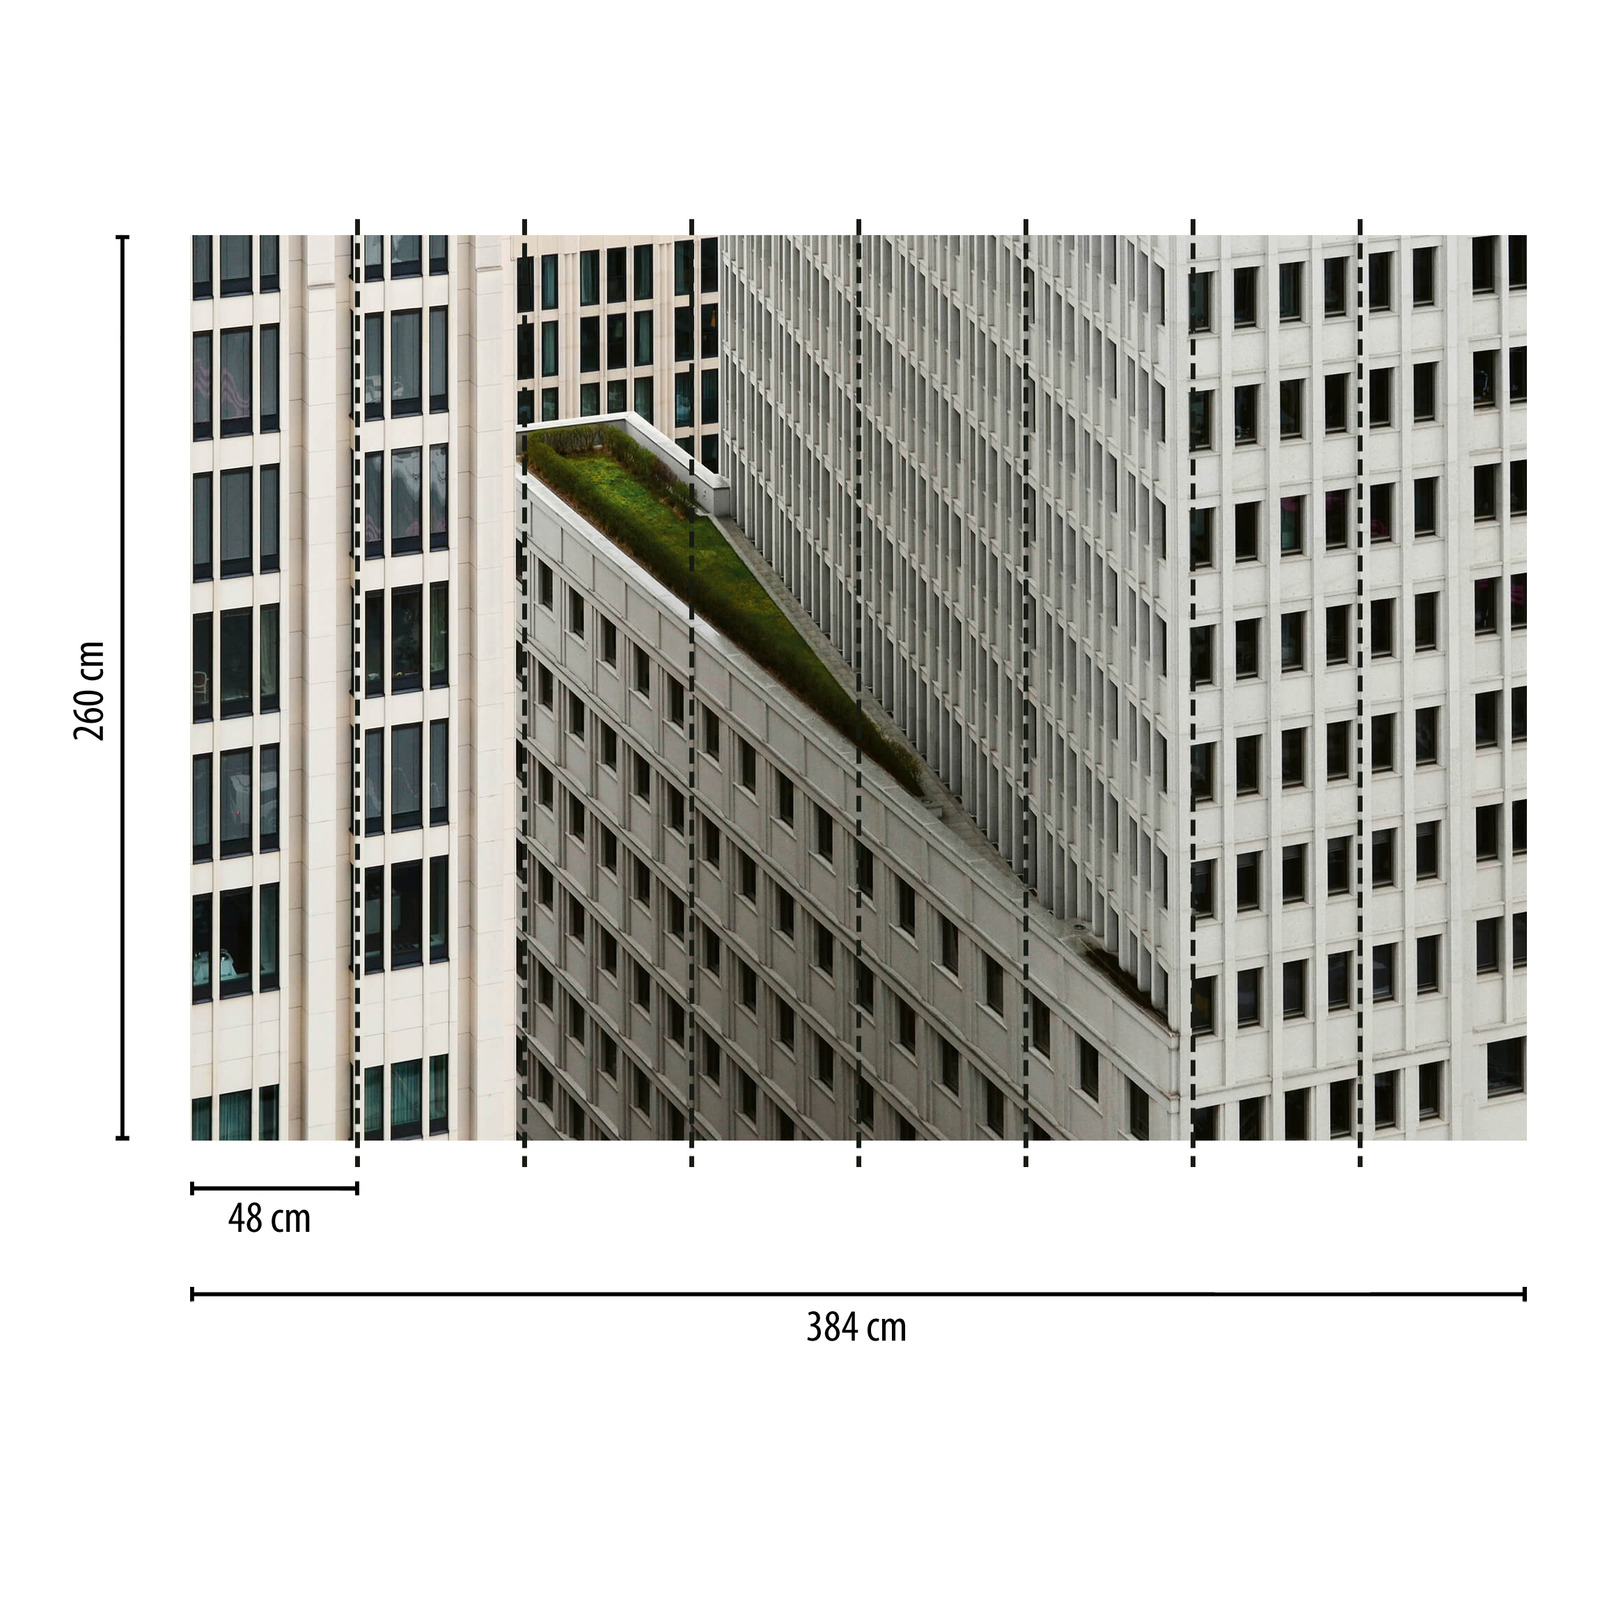             Fototapete Architektur Gebäude – Grau, Weiß, Schwarz
        